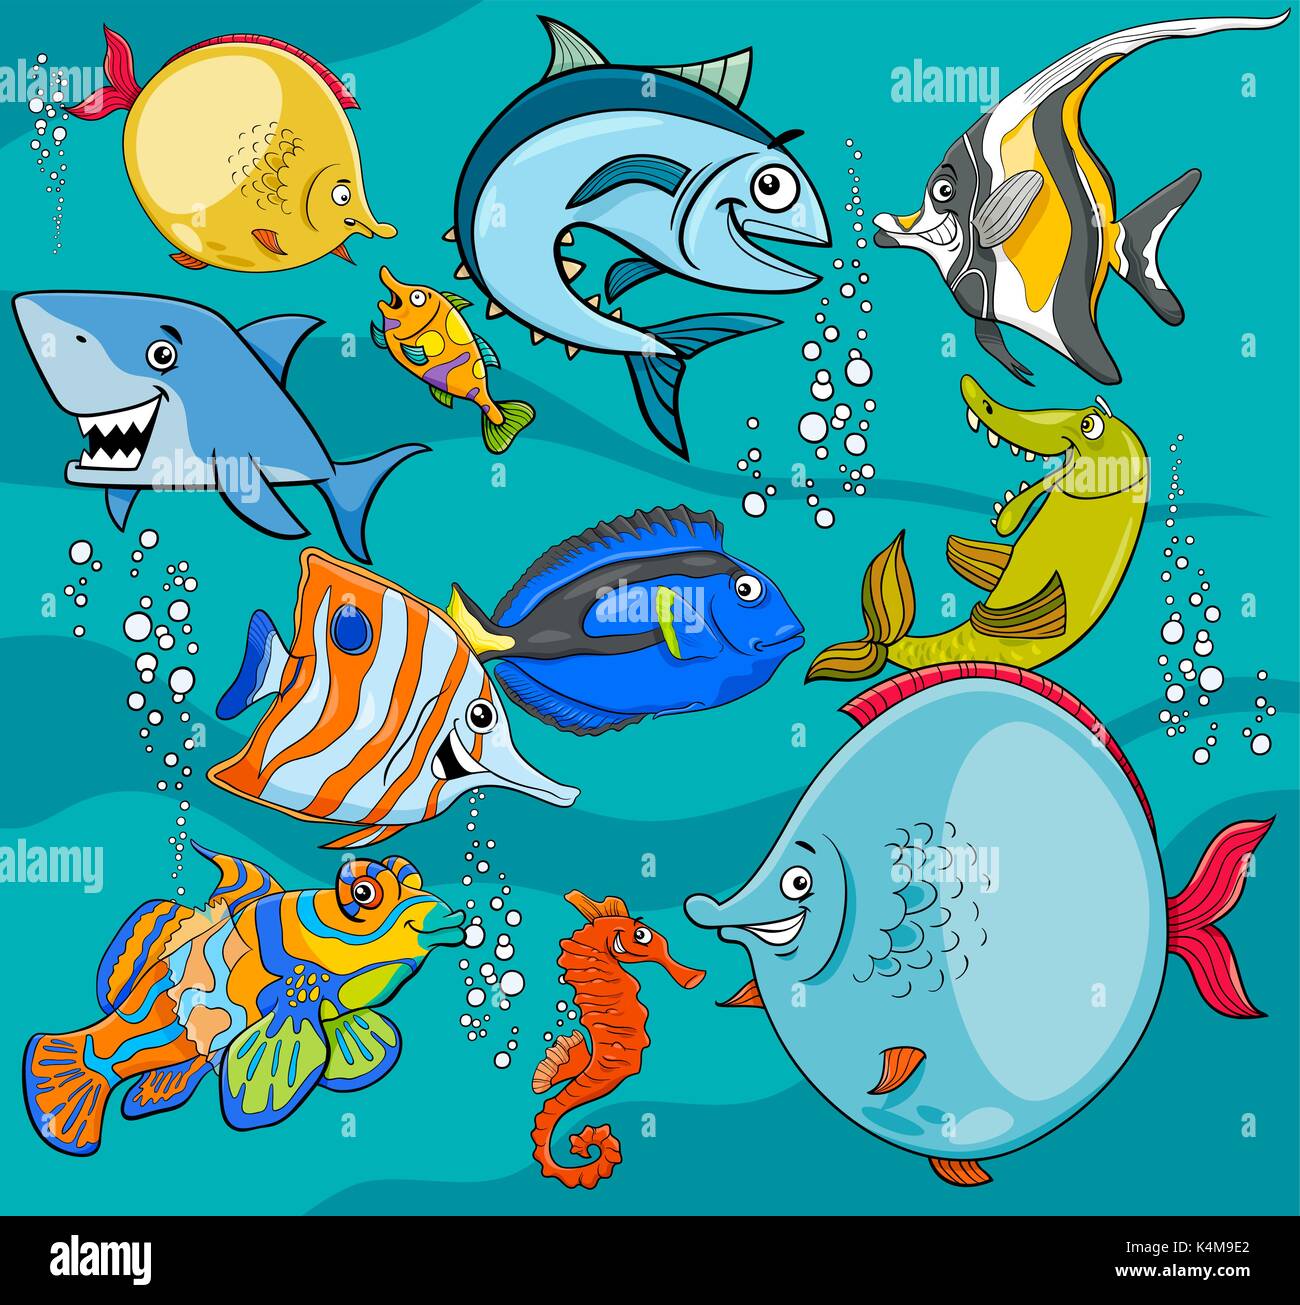 Illustrations de Funny Cartoon mer Poisson Animal Vie Groupe Caractères Illustration de Vecteur